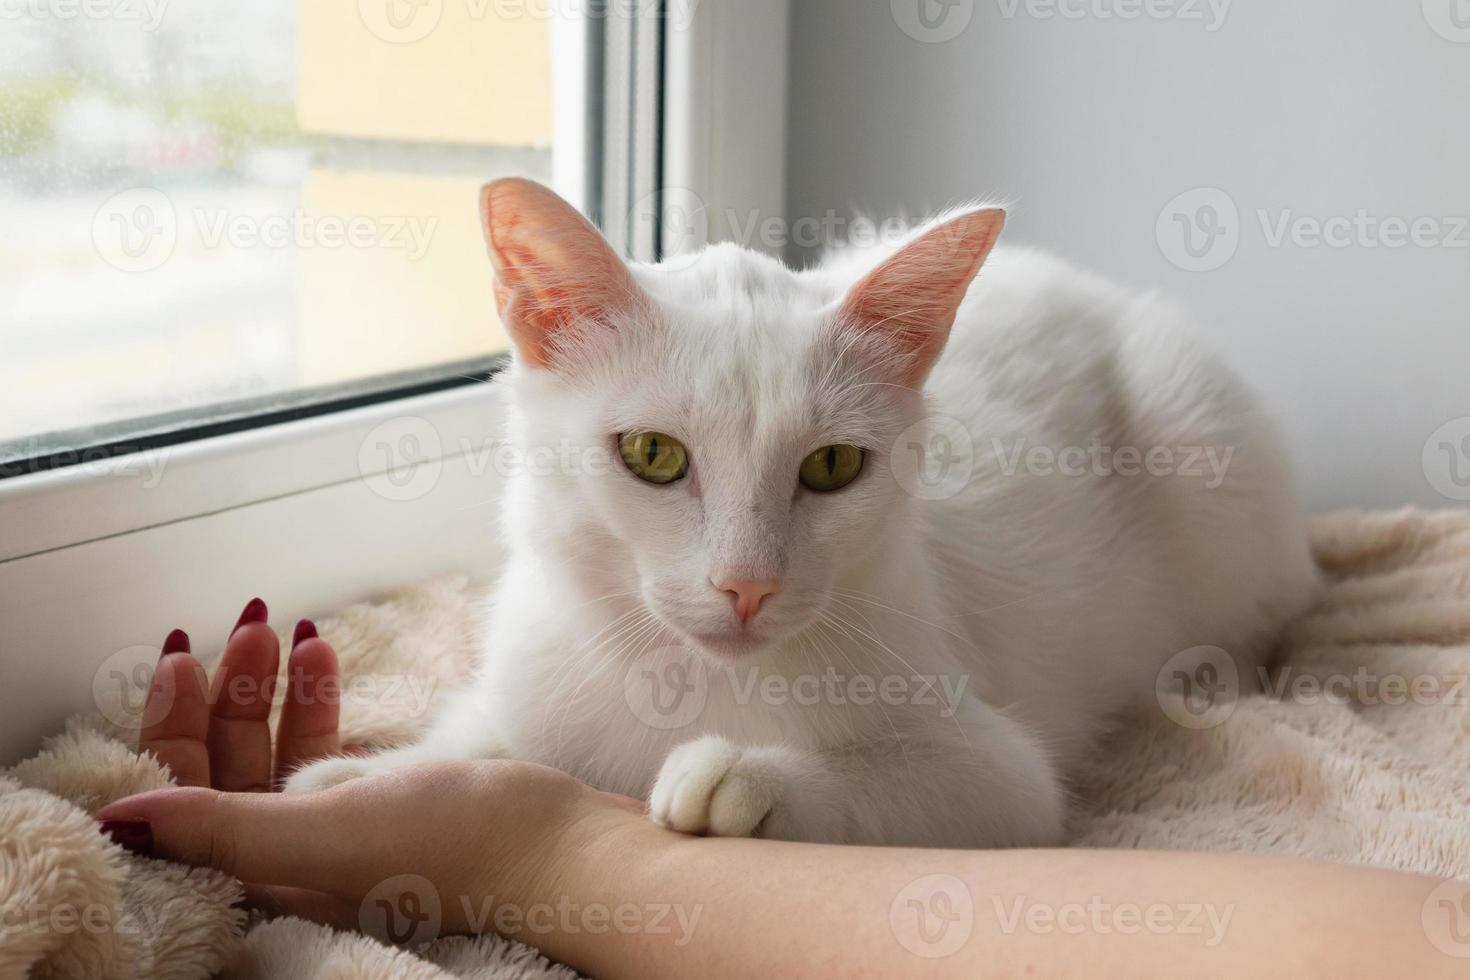 adorable chat blanc aux yeux verts grands ouverts est allongé sur une couverture rose près de la fenêtre et tenant la main de son propriétaire, vue de face. photo